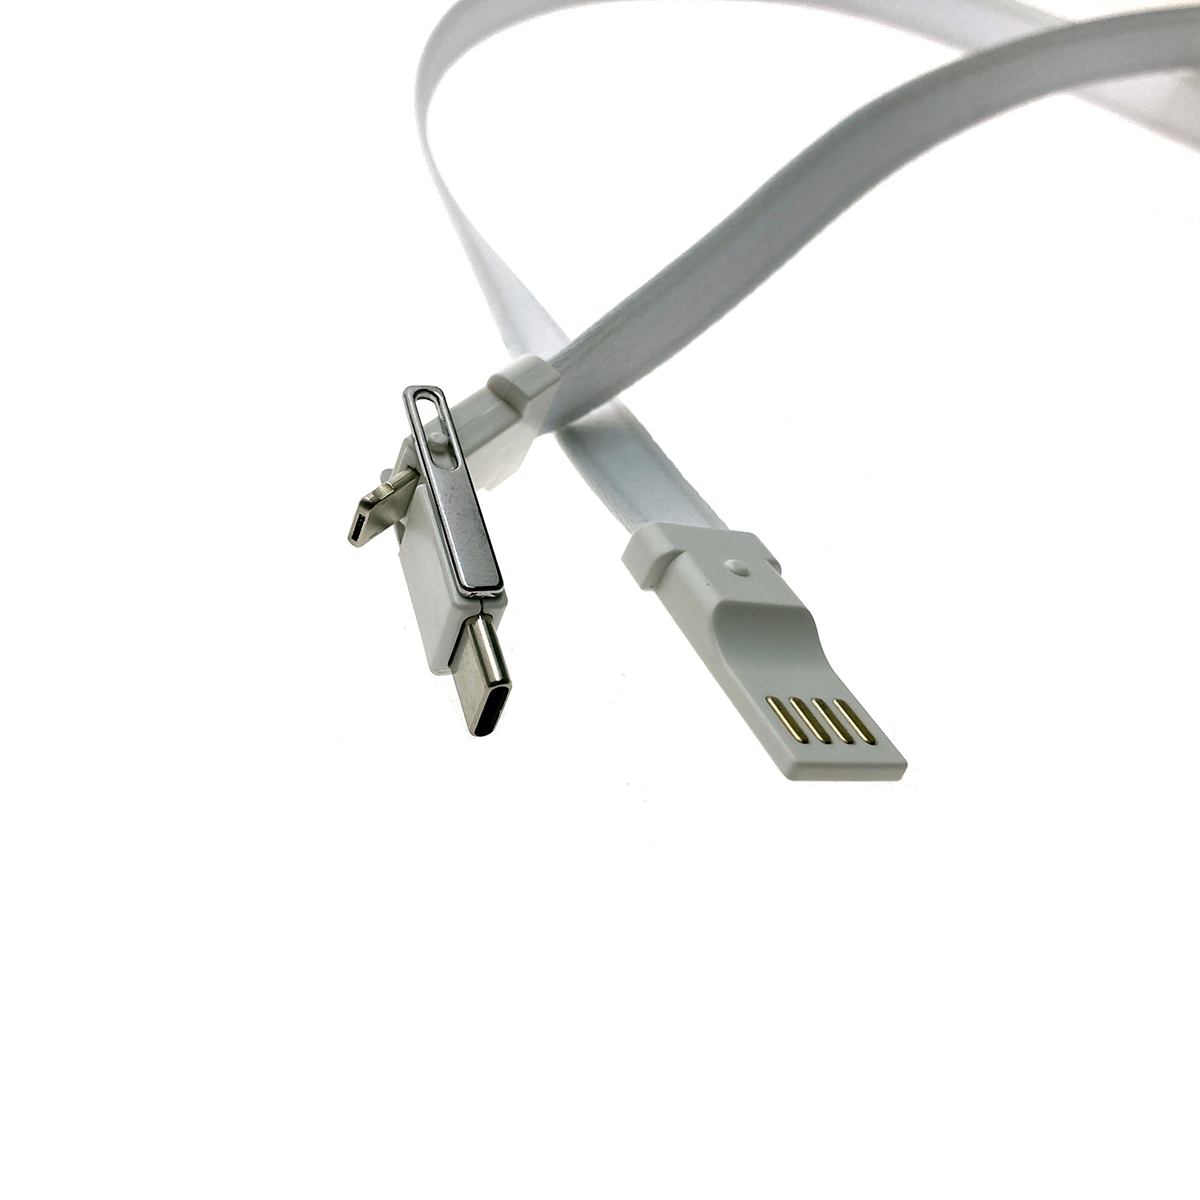 Универсальный кабель - переходник 3в1 Espada Elyard3i1 белый Type C + micro USB + iphone Lightning 8pin